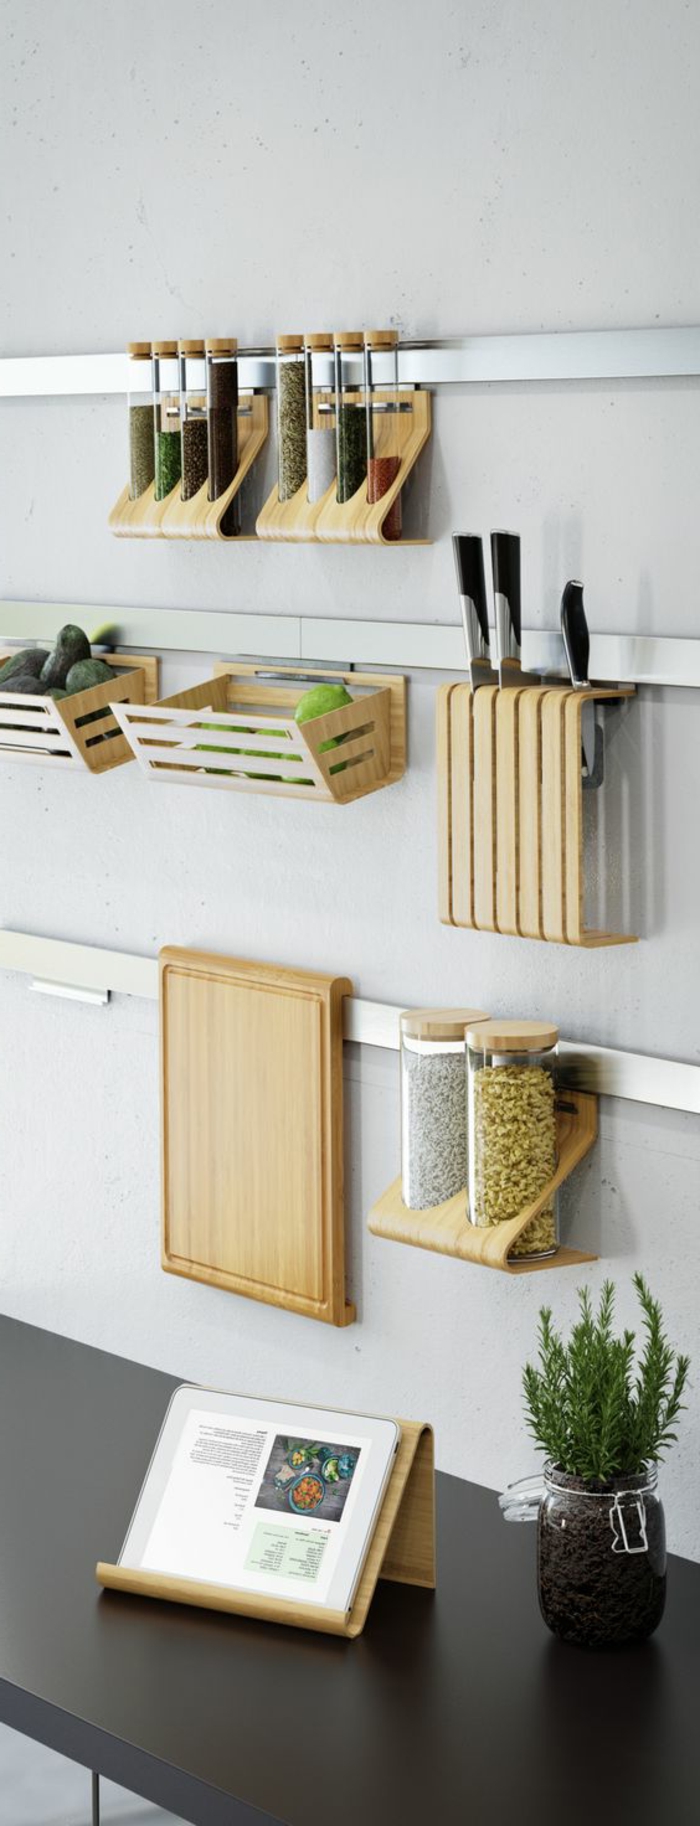 Wandgestaltung Ideen, kleine angehängte Regale aus Holz für Küchenzubehör